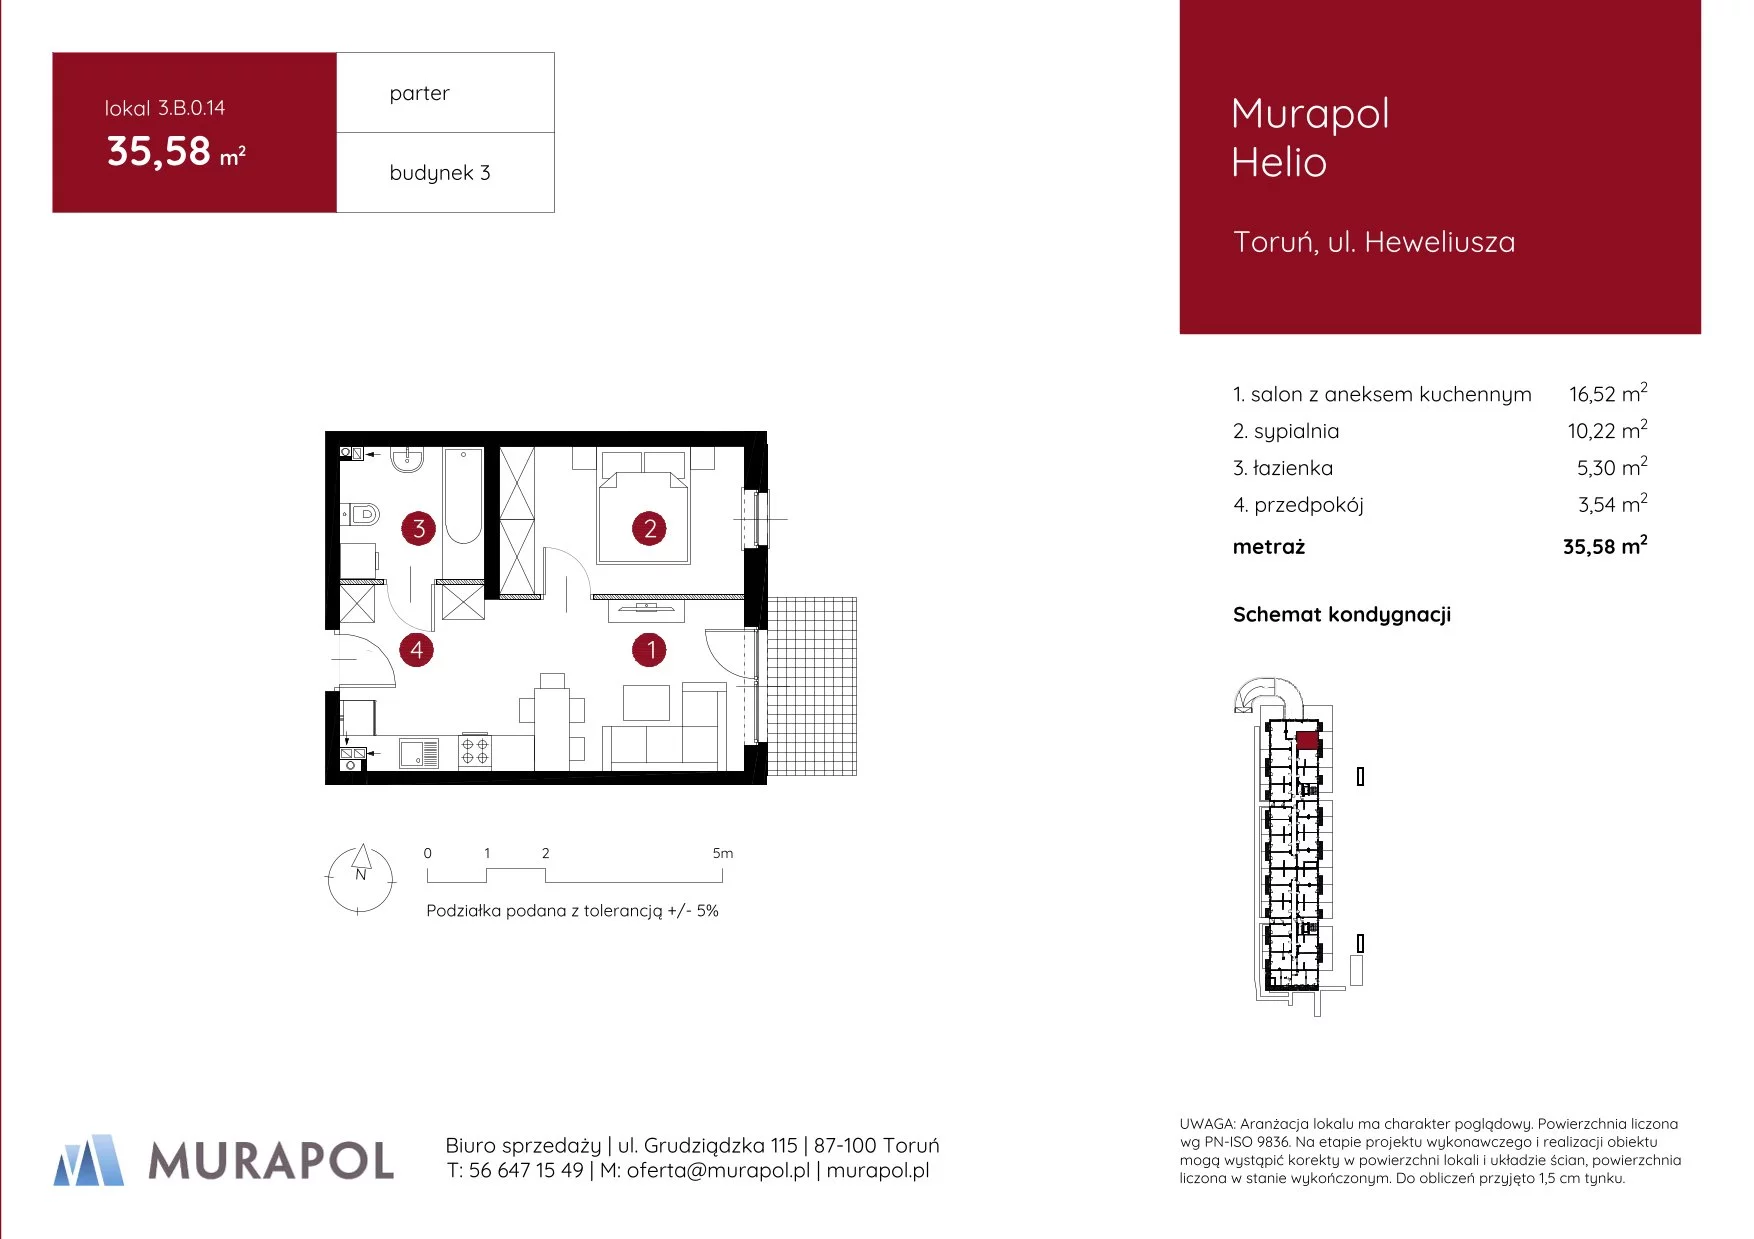 Mieszkanie 35,58 m², parter, oferta nr 3.B.0.14, Murapol Helio, Toruń, Wrzosy, JAR, ul. Heweliusza